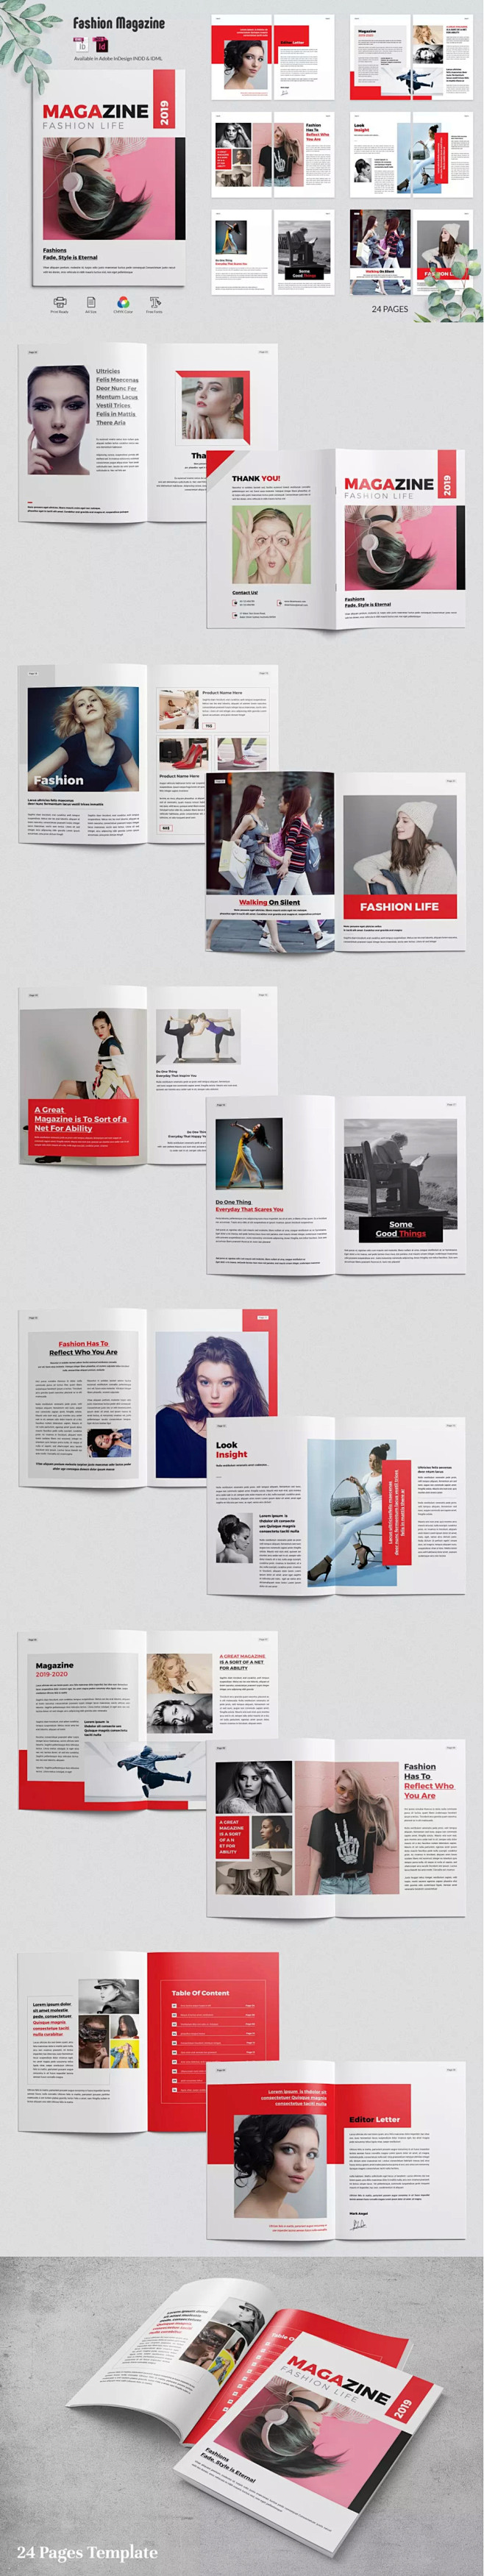 女性时尚购物杂志设计模板品牌画册  